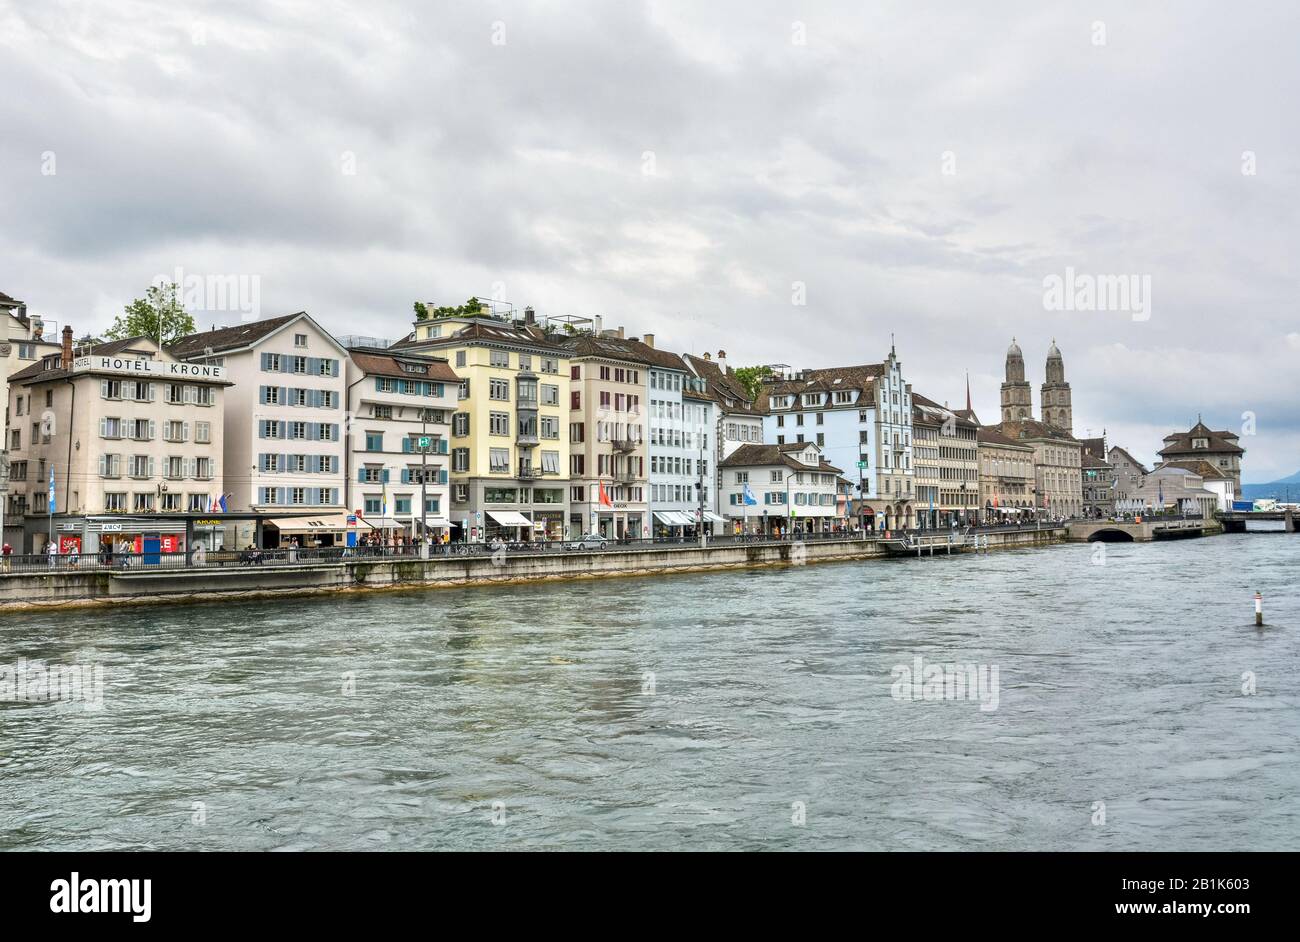 Zurigo, Svizzera – 25 Giugno 2016. Vista degli edifici del centro storico lungo le rive del fiume Limmat a Zurigo, con proprietà commerciali e persone. Foto Stock